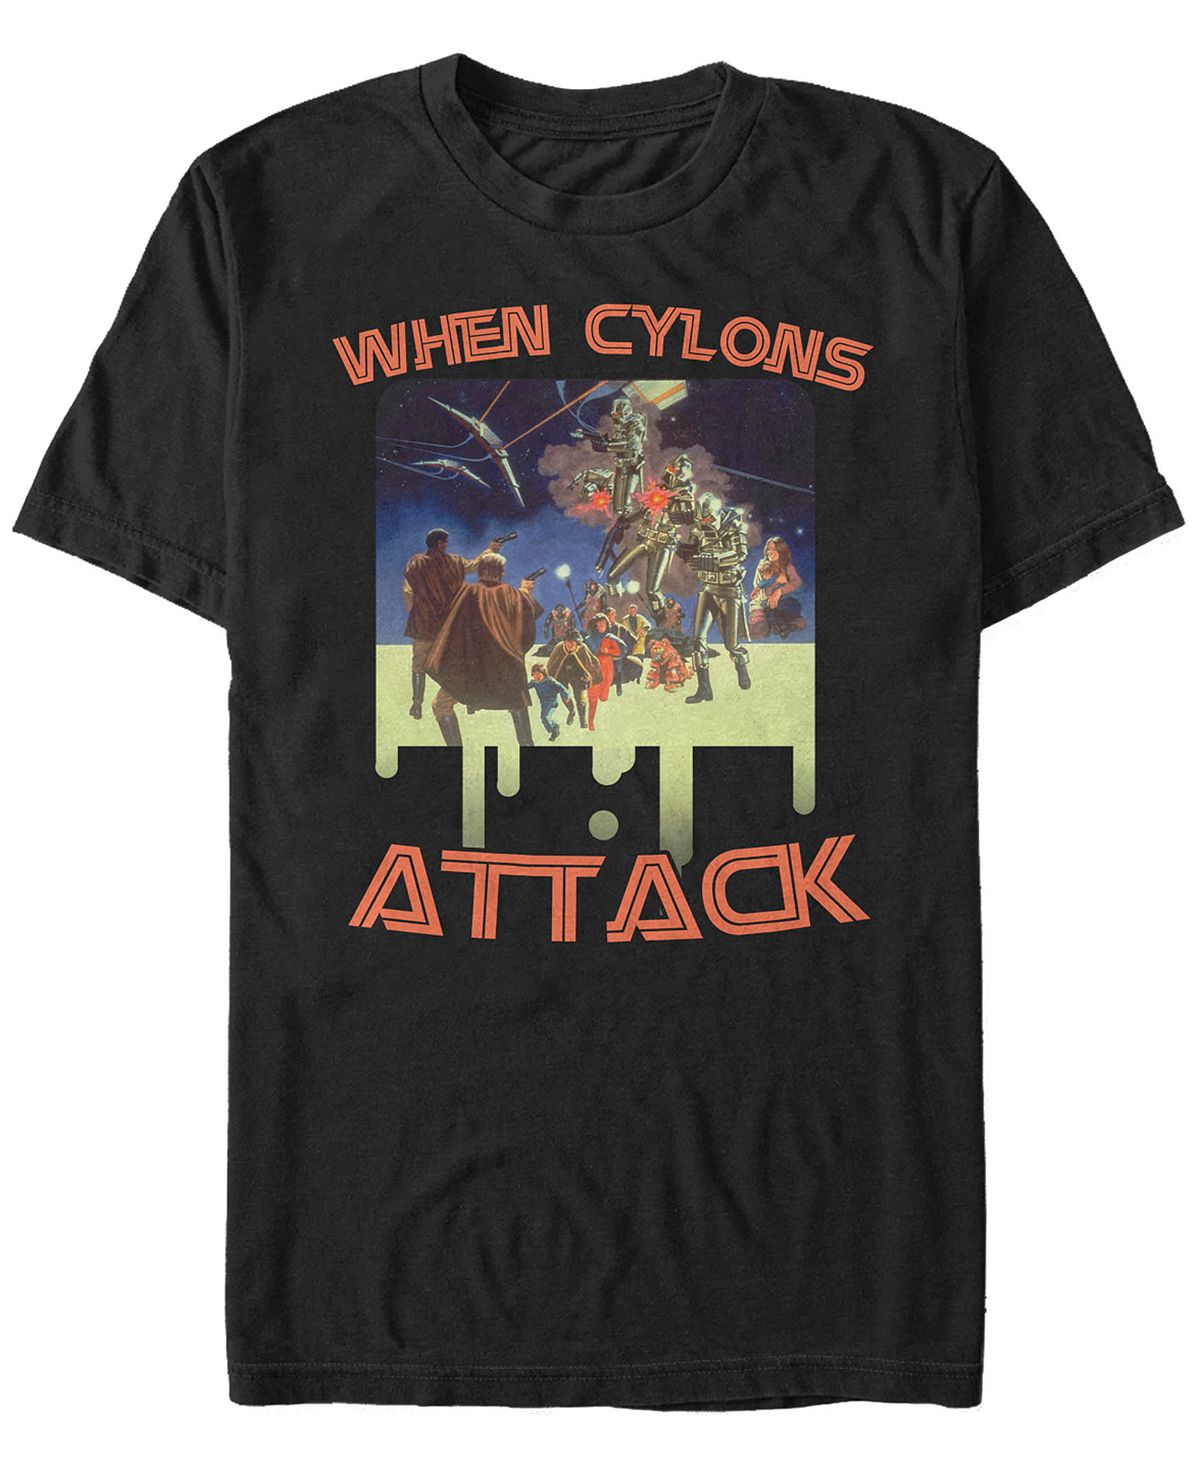 Мужская футболка с коротким рукавом battlestar galactica when cylons attack Fifth Sun, черный